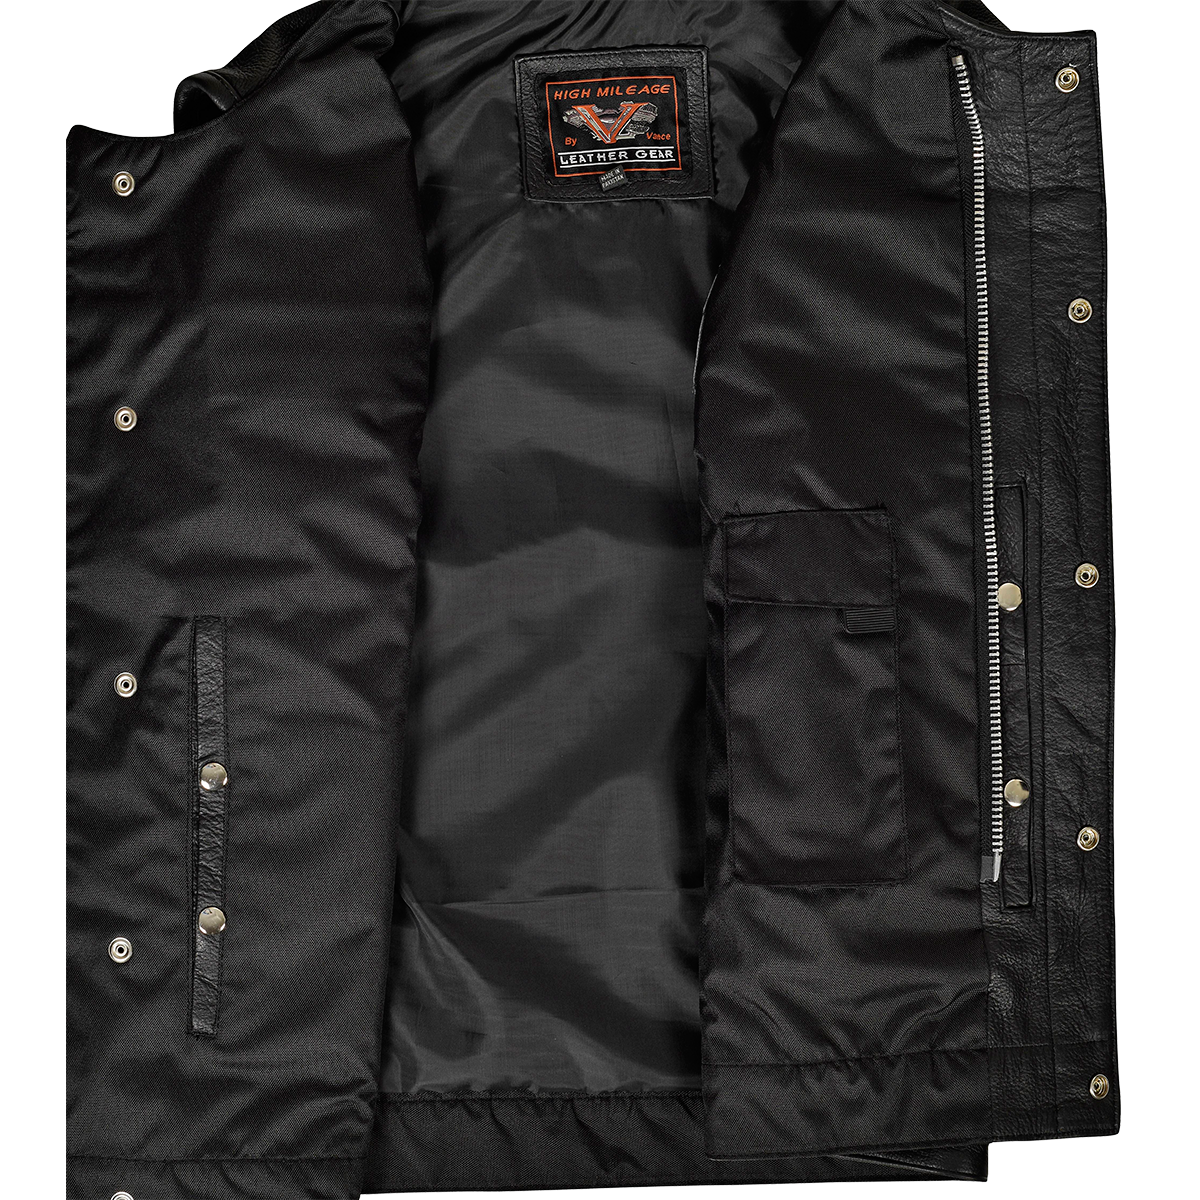 VL919 Men's Leather Club Vest with Quick Access Gun Pocket